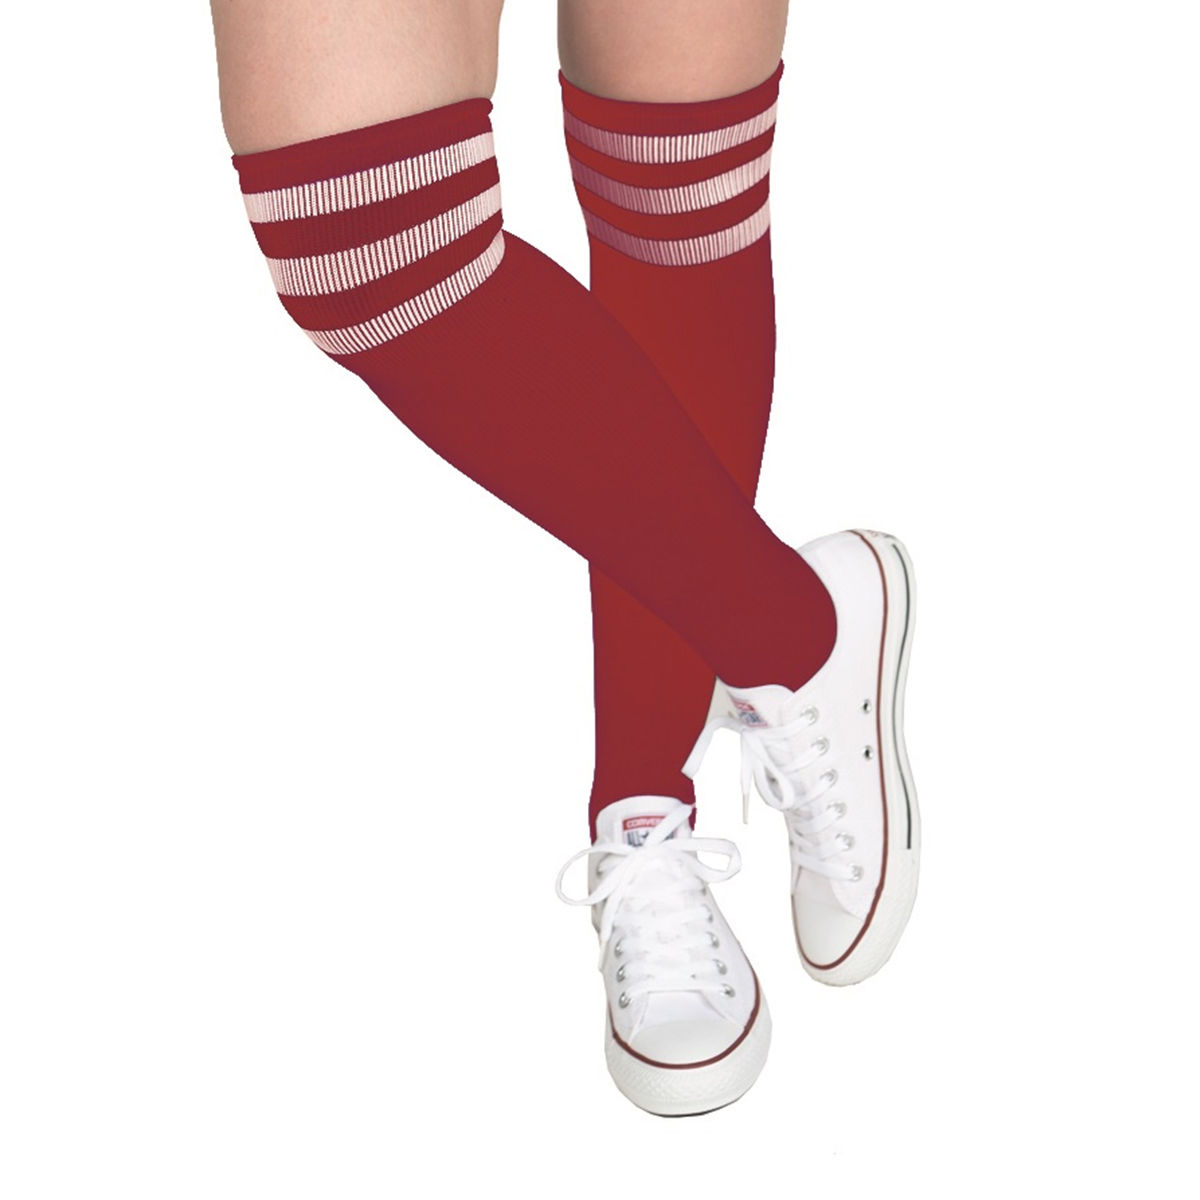 Socken Fussball, rot mit weien Streifen